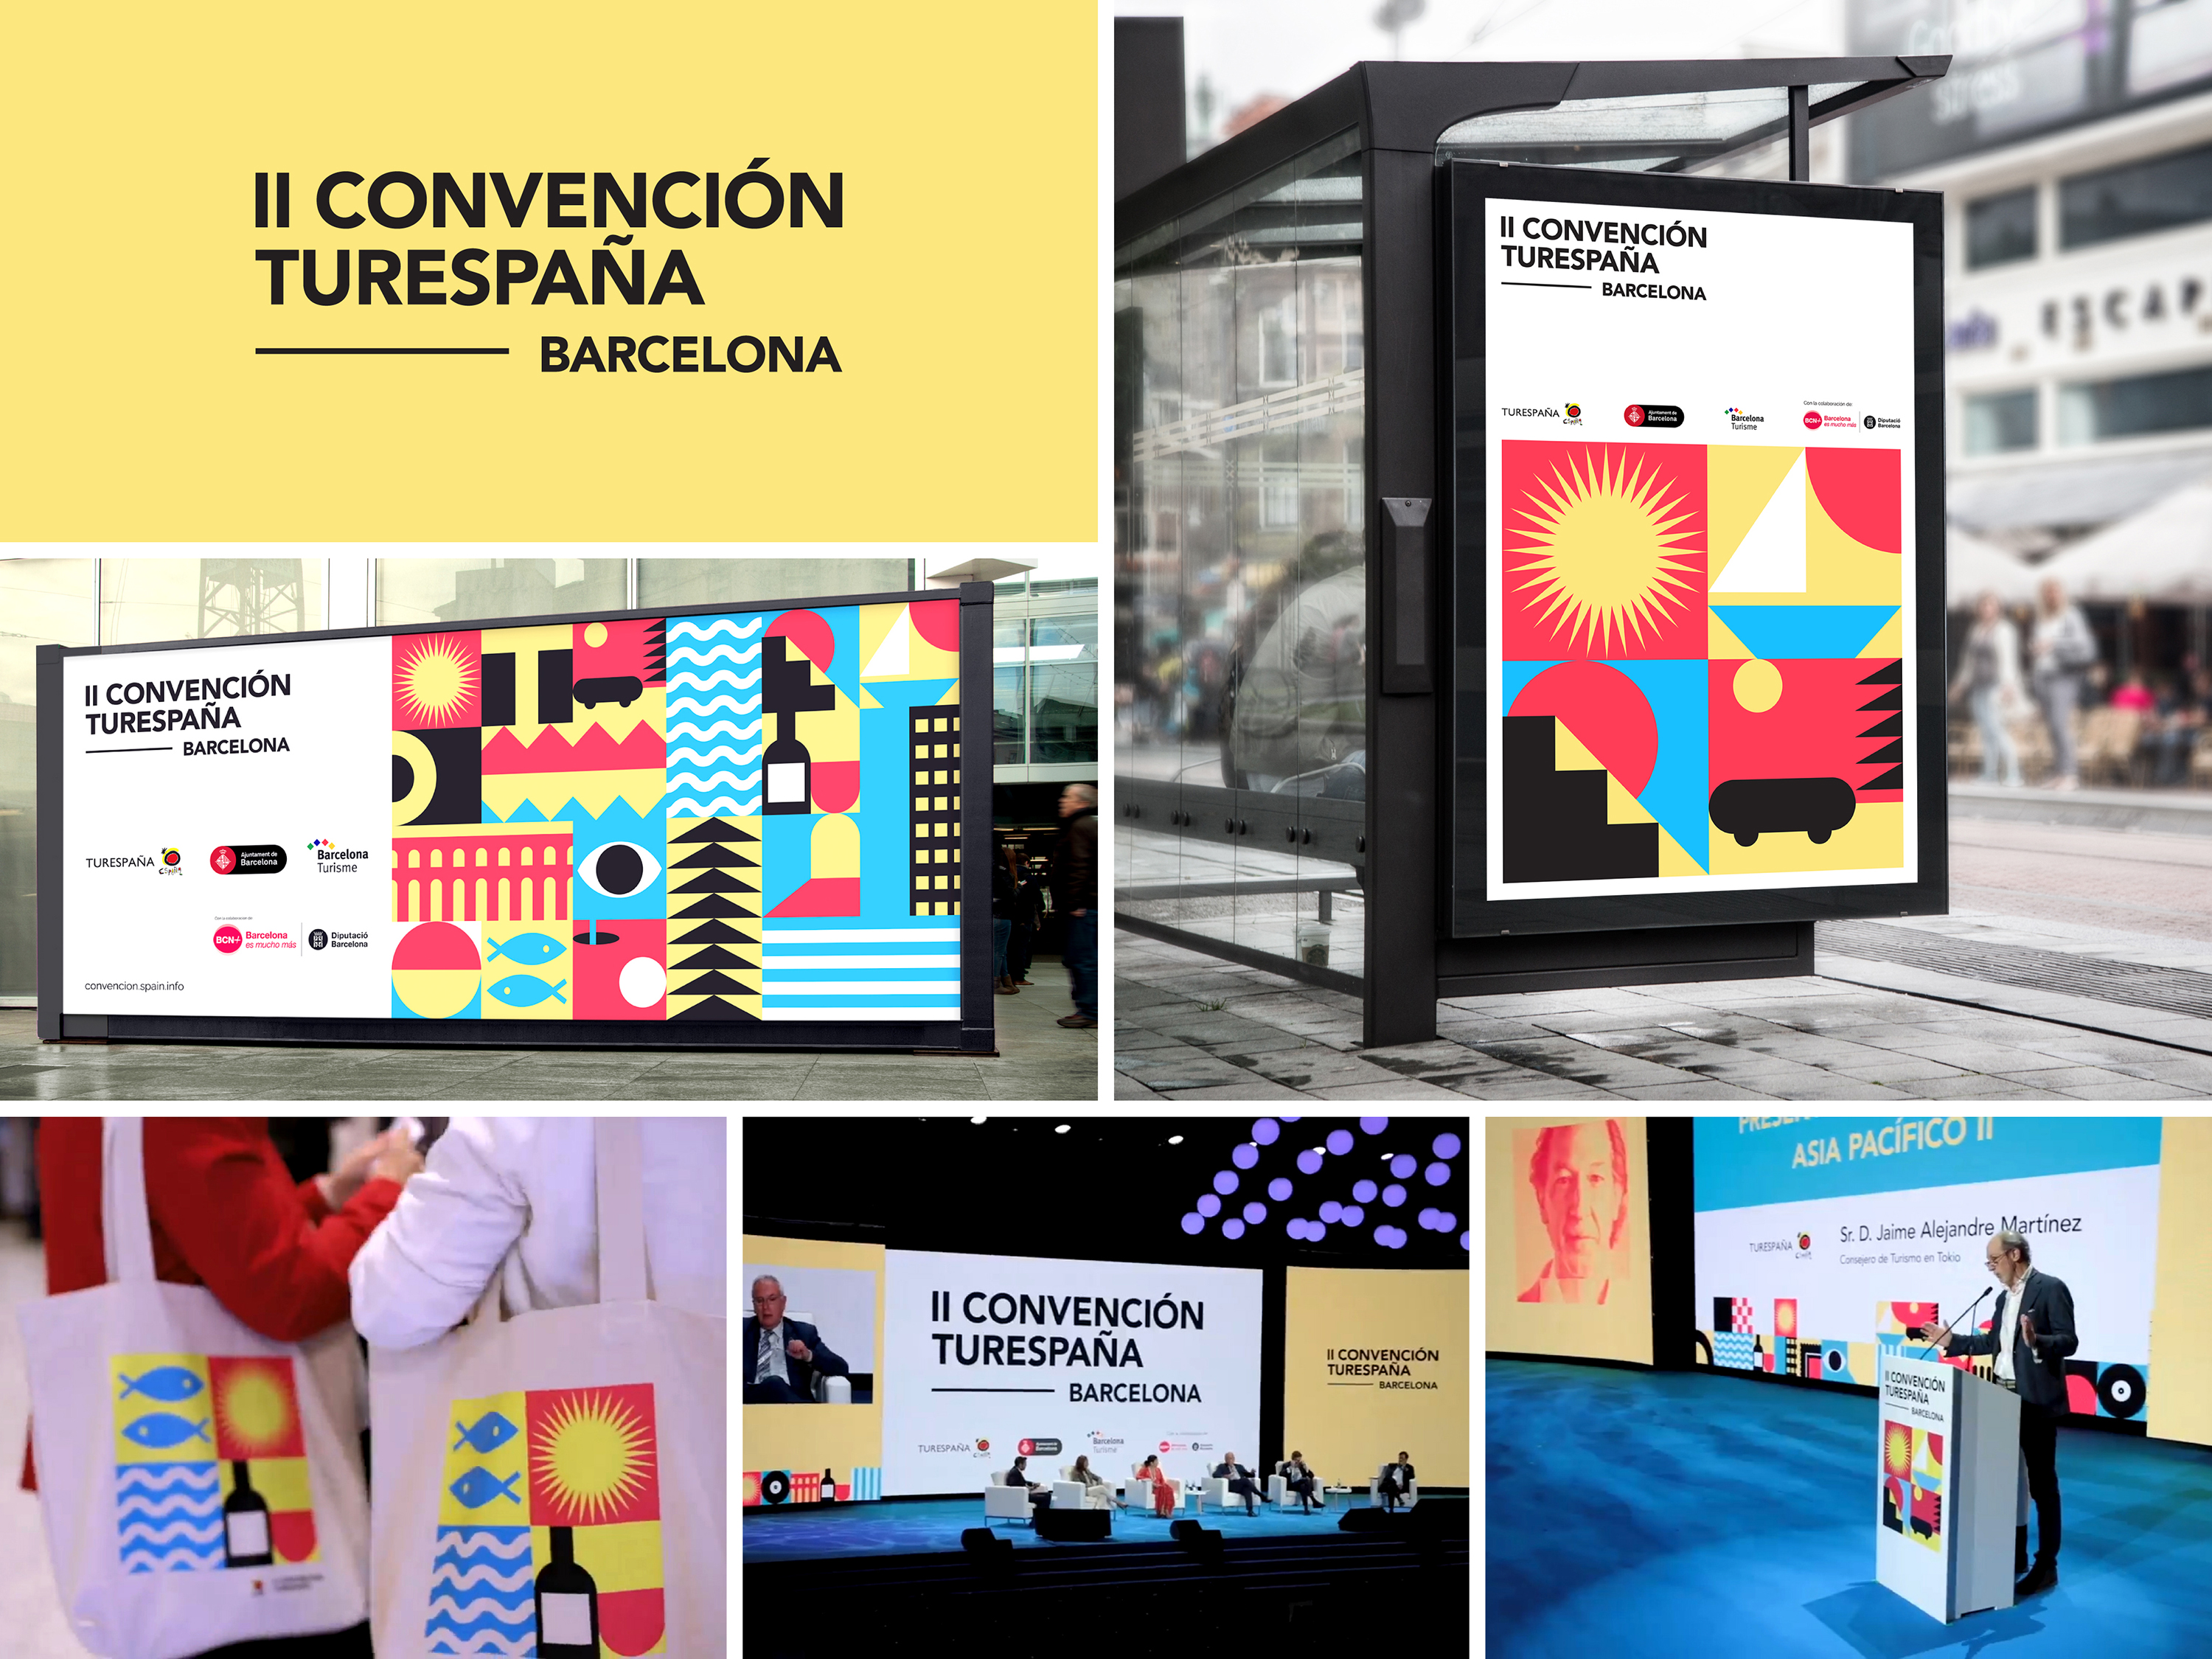 II Convención Turespaña - Barcelona by Julio Liarte - Creative Work